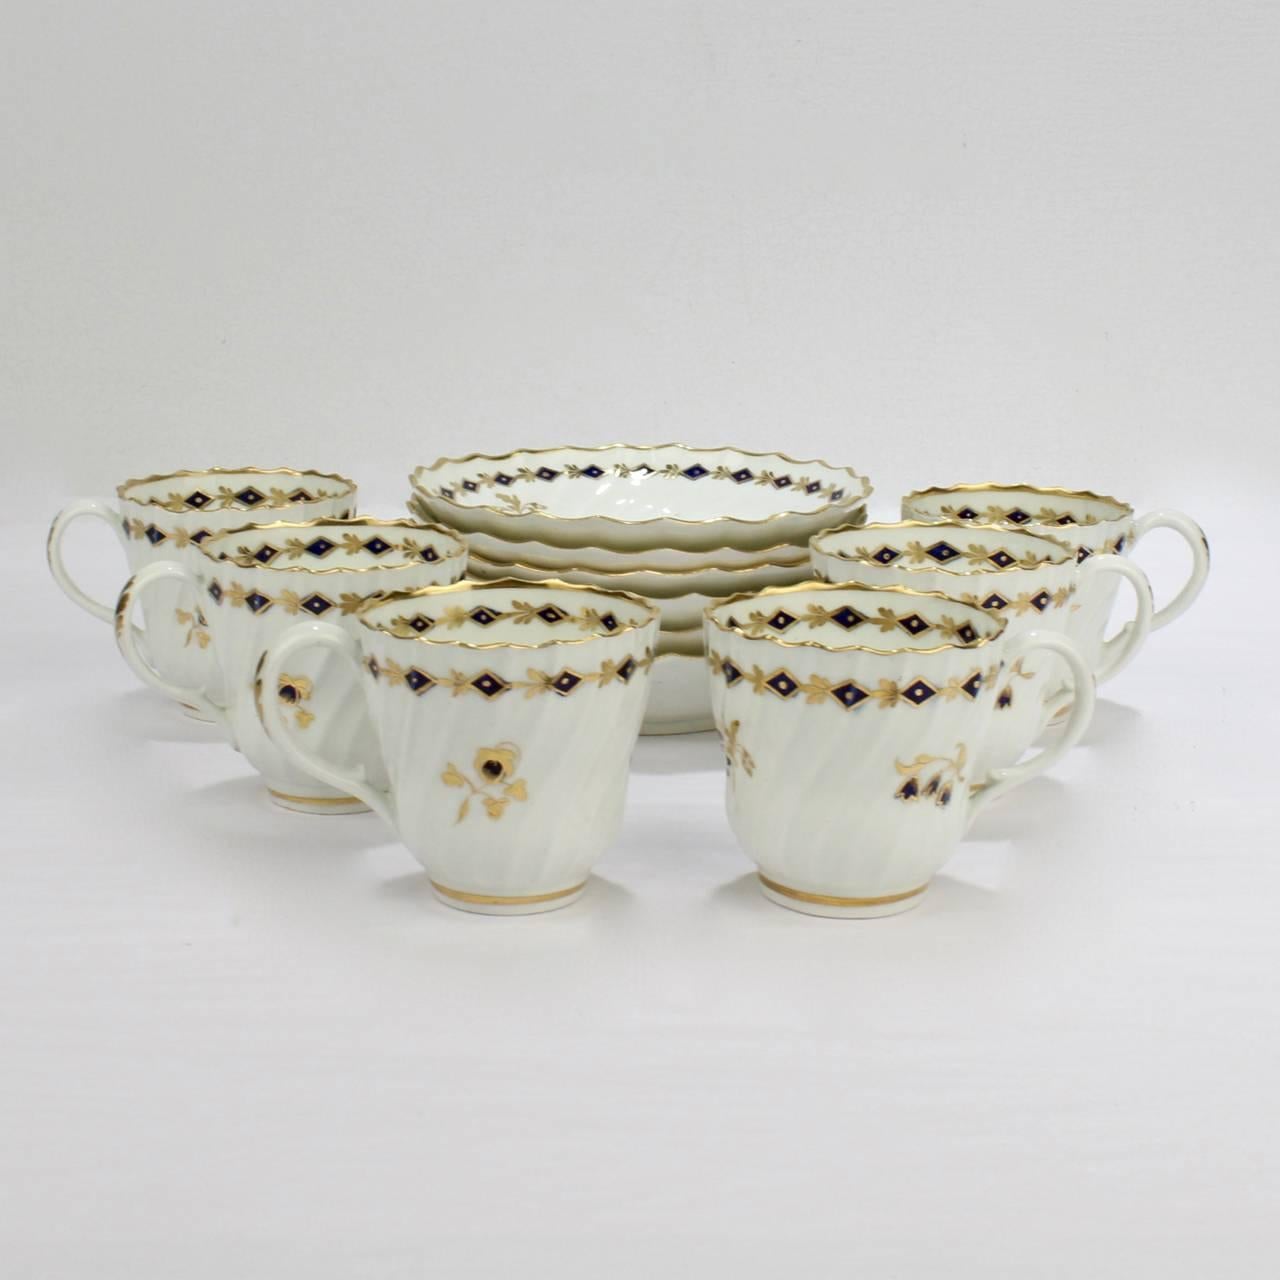 Un ensemble de six tasses et soucoupes anciennes en porcelaine Flight Worcester.

Chacune d'entre elles est ornée d'un motif tourbillonnant côtelé et d'une décoration de brins et de guirlandes de fleurs bleu cobalt et or.

Chaque base est